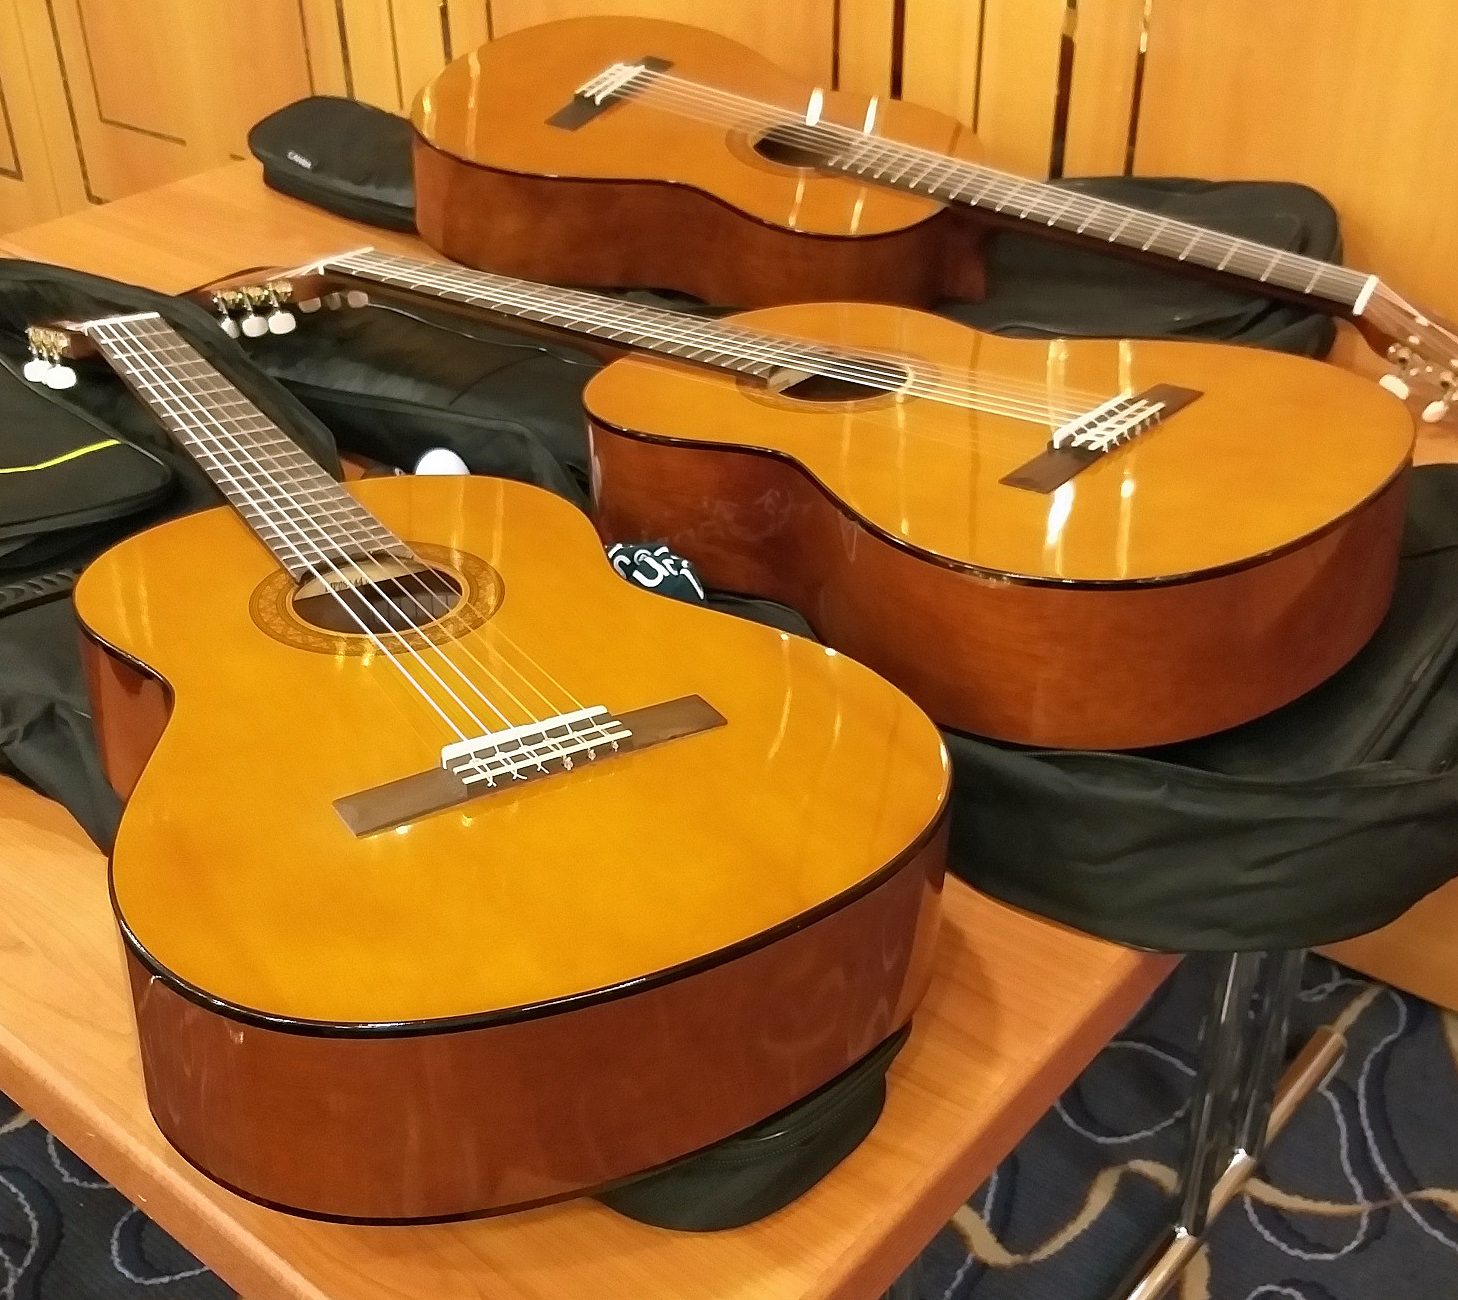 Drei Gitarren liegen auf einem Tisch